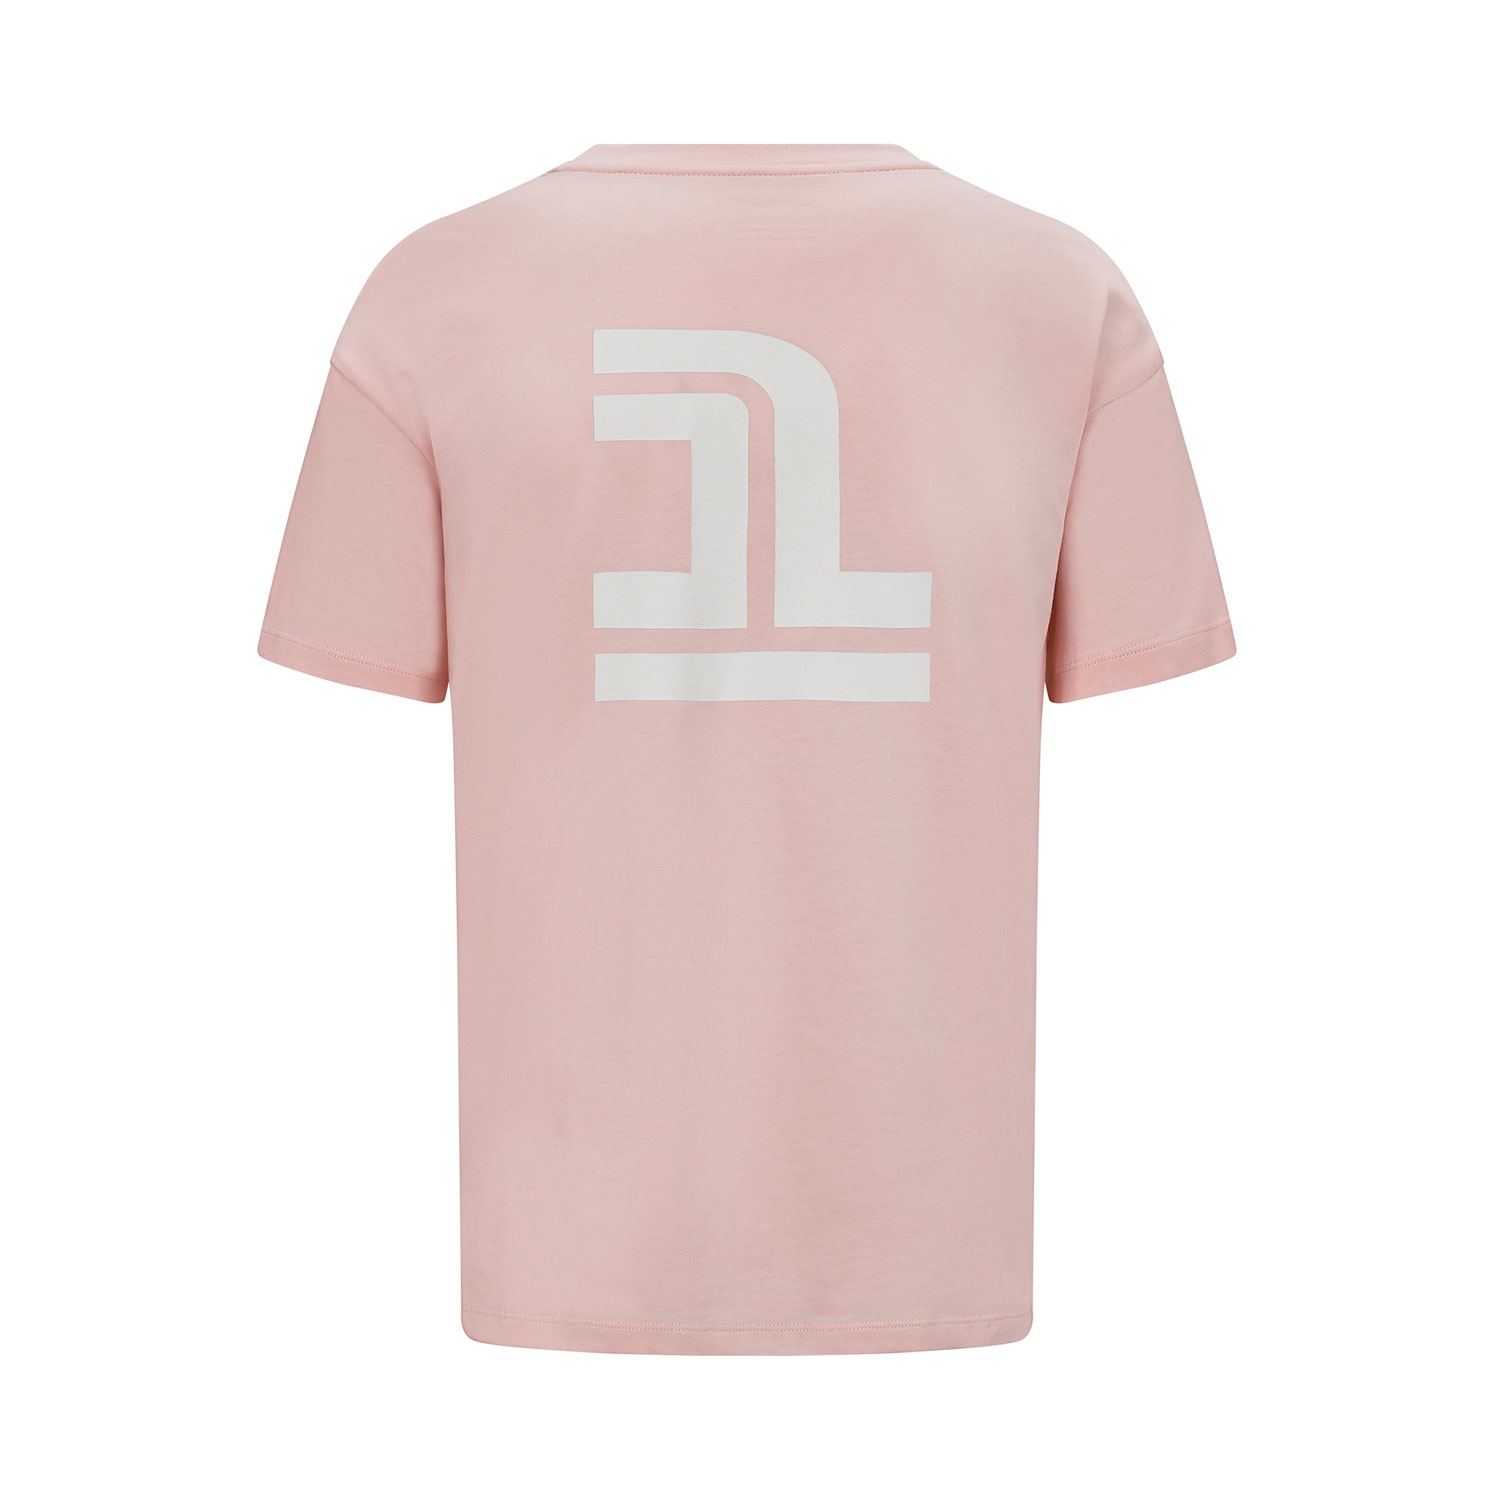 Buy Louis Vuitton logo t shirt Online at desertcartIsrael